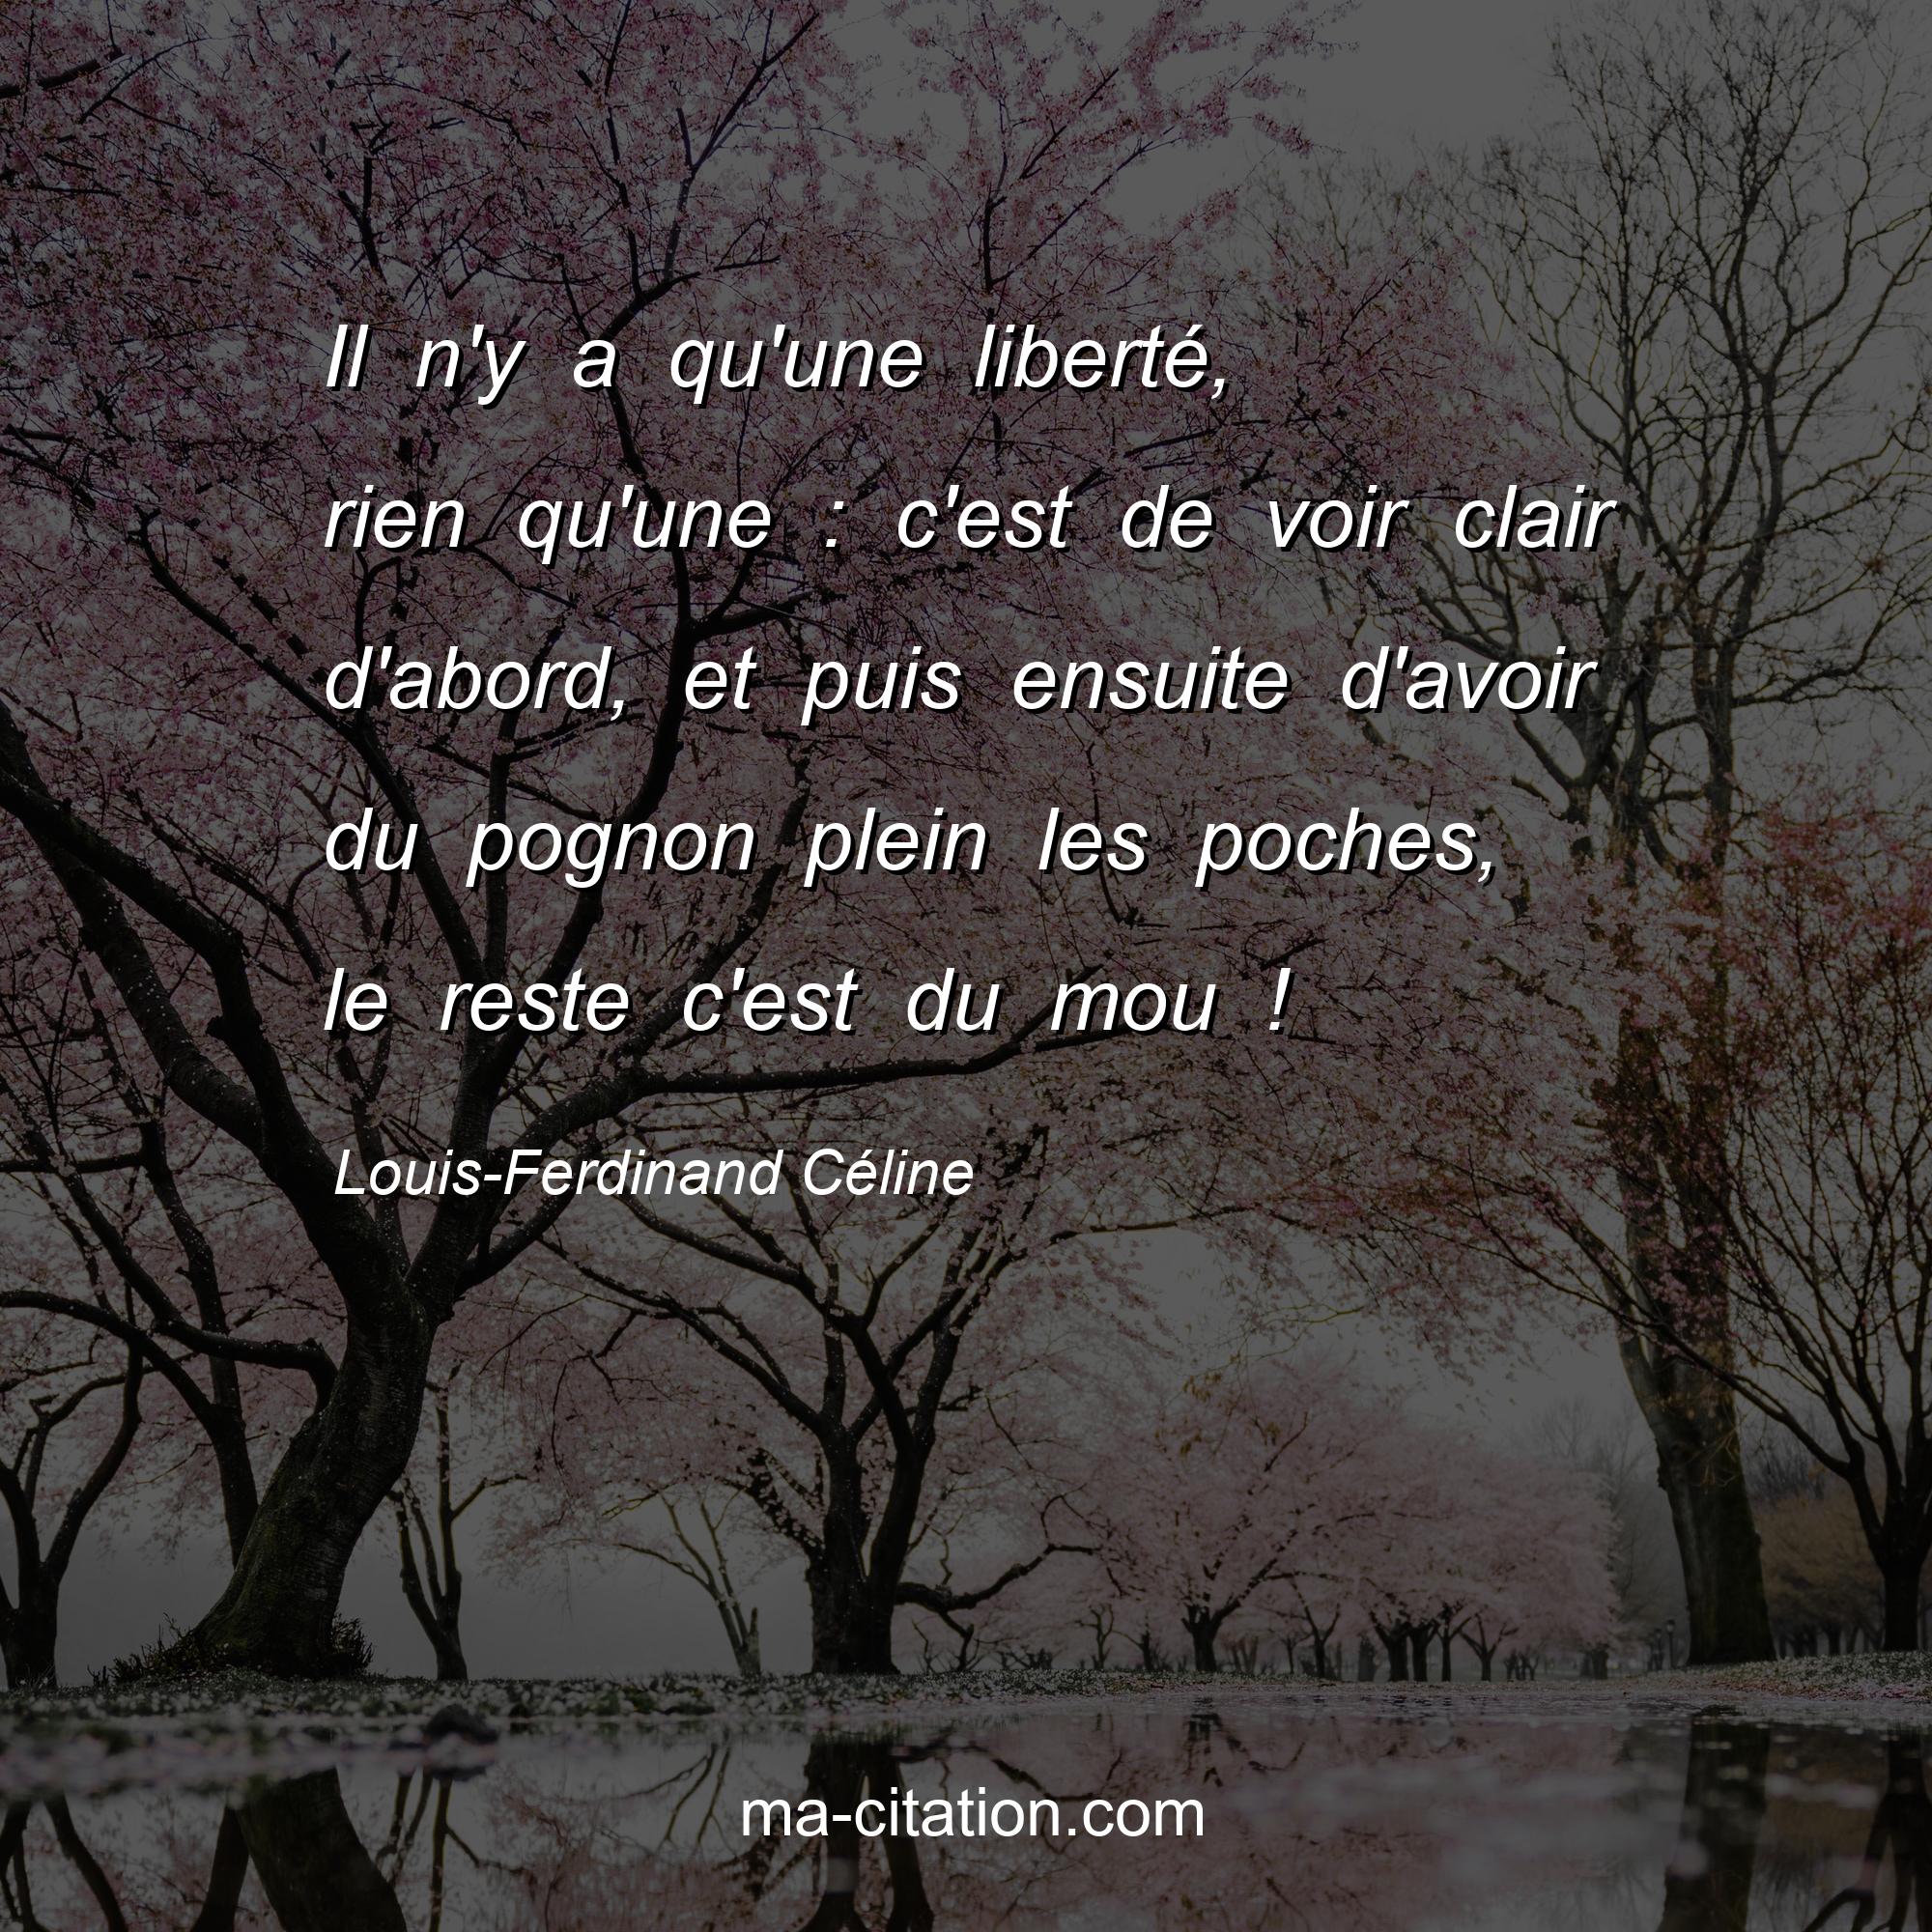 Louis-Ferdinand Céline : Il n'y a qu'une liberté, rien qu'une : c'est de voir clair d'abord, et puis ensuite d'avoir du pognon plein les poches, le reste c'est du mou !